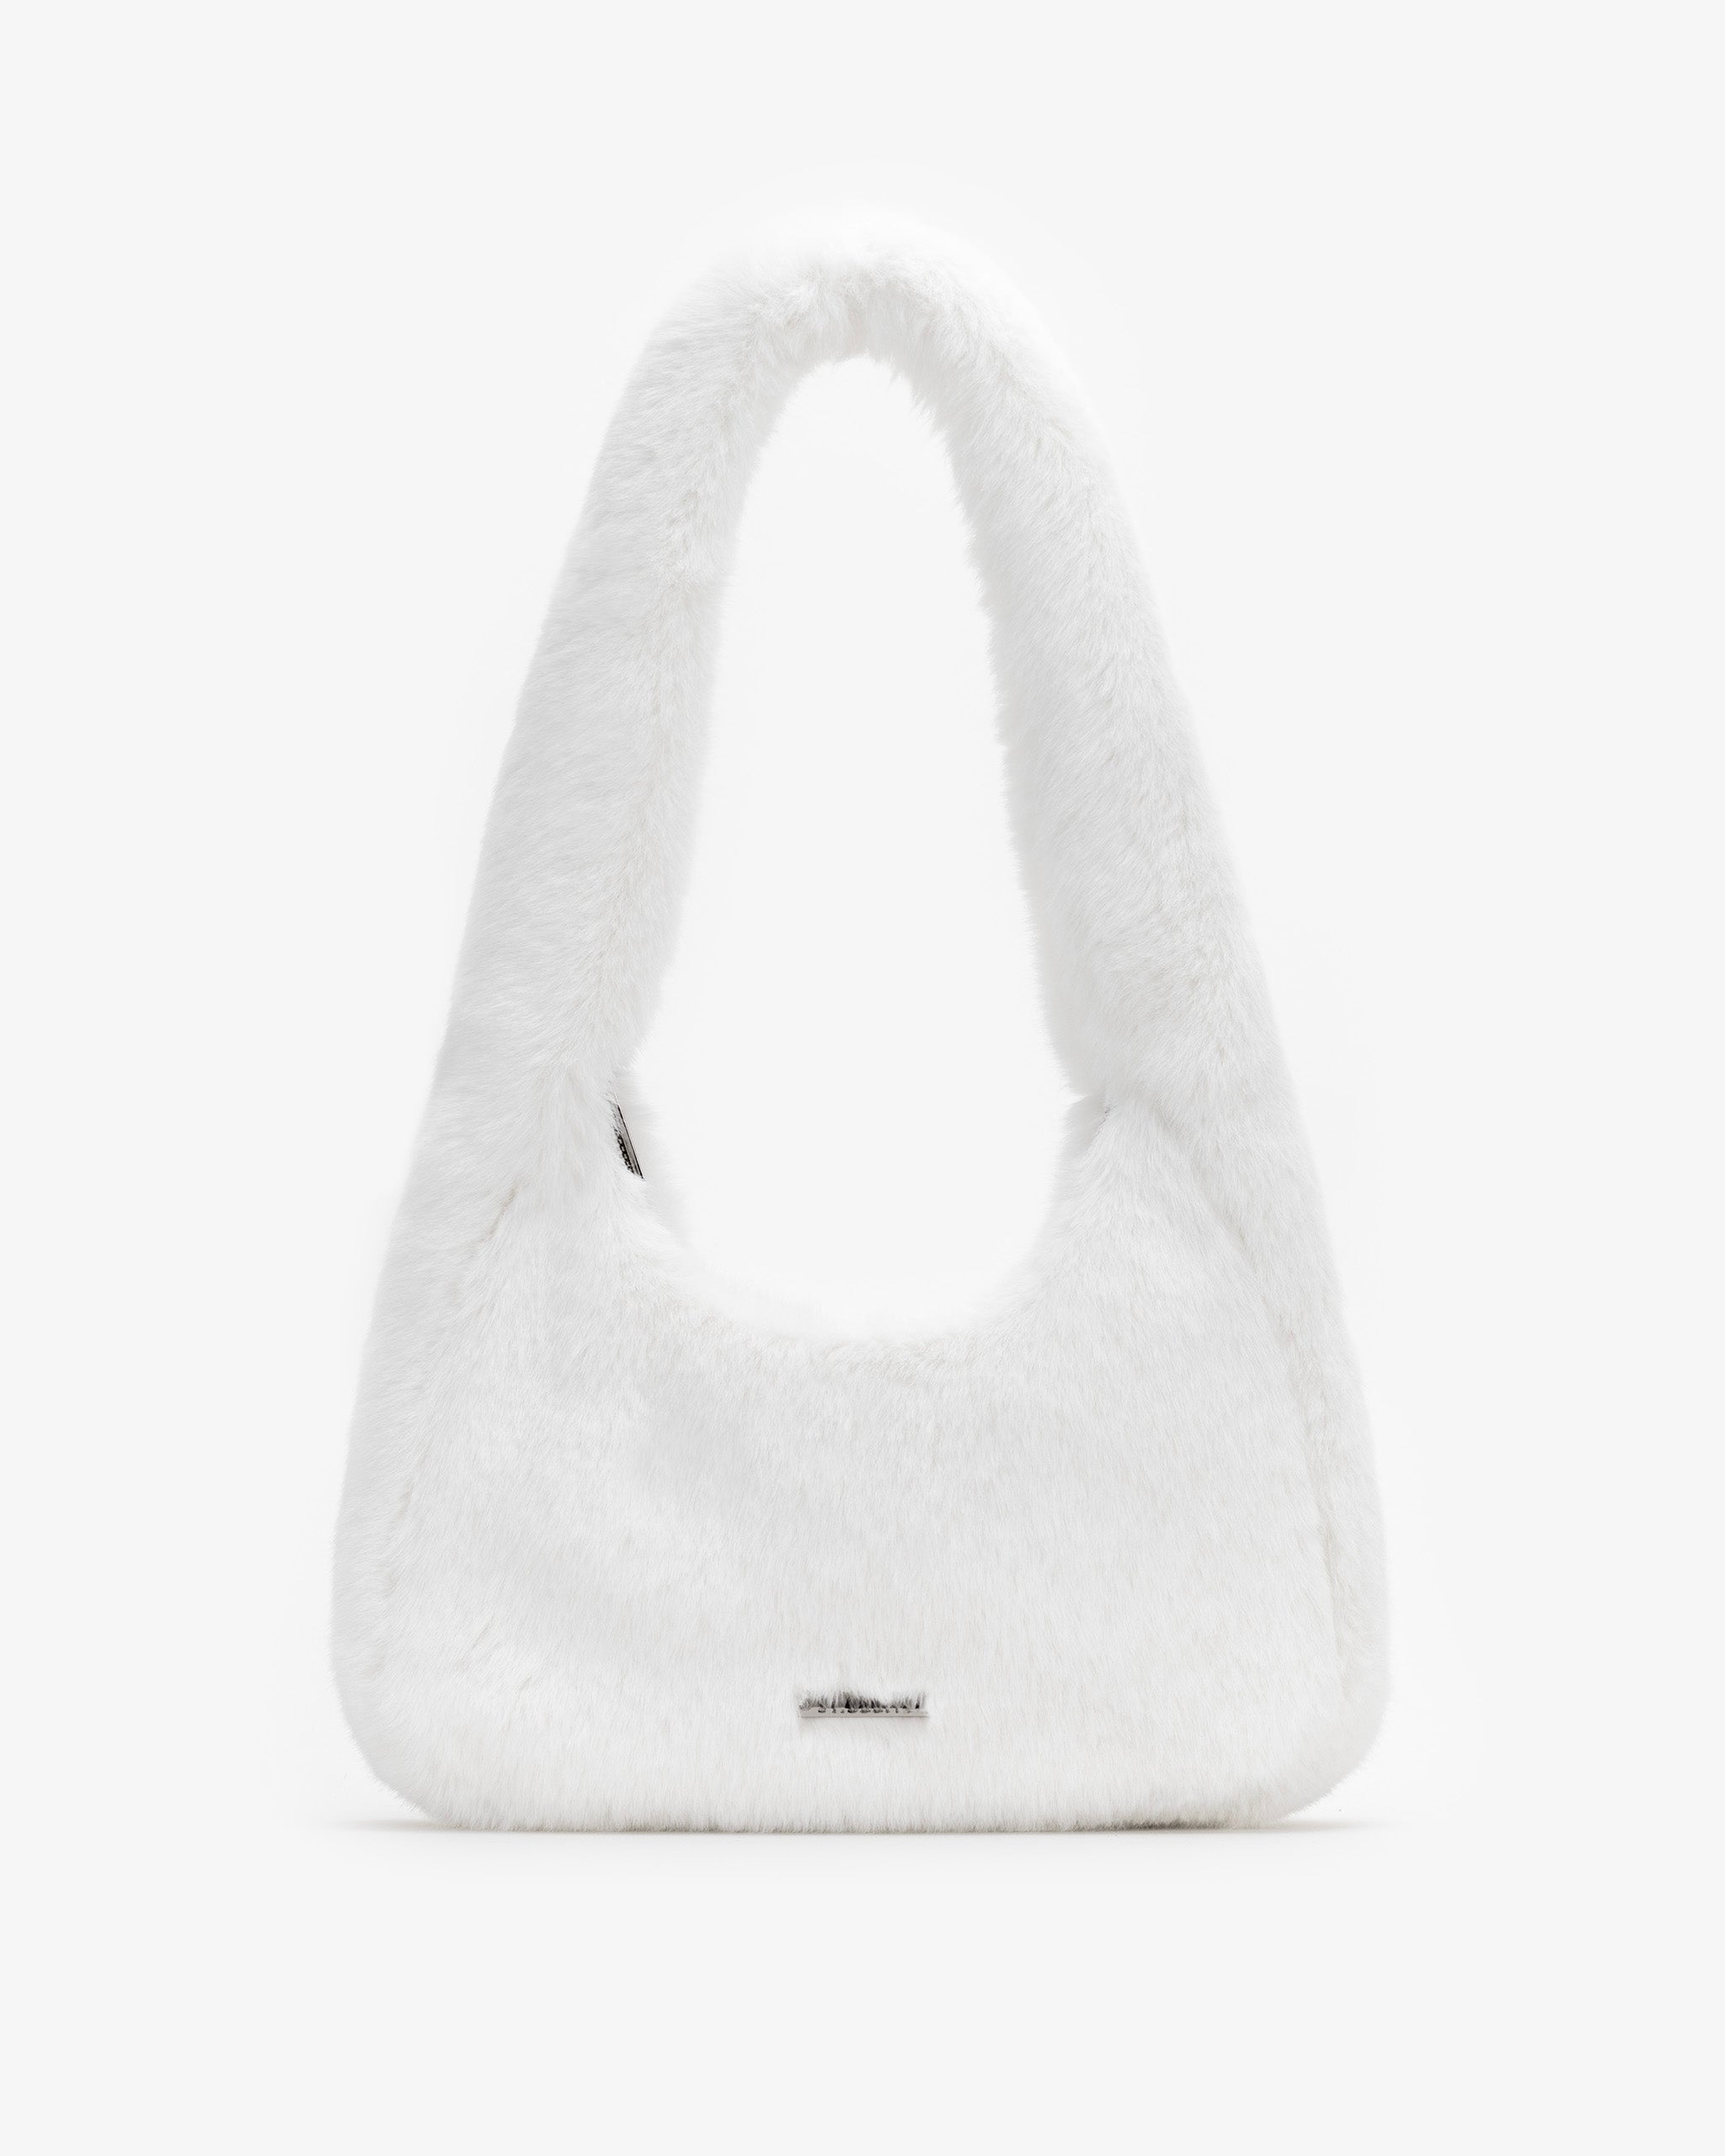 Soft Shoulder Bag in White Fur